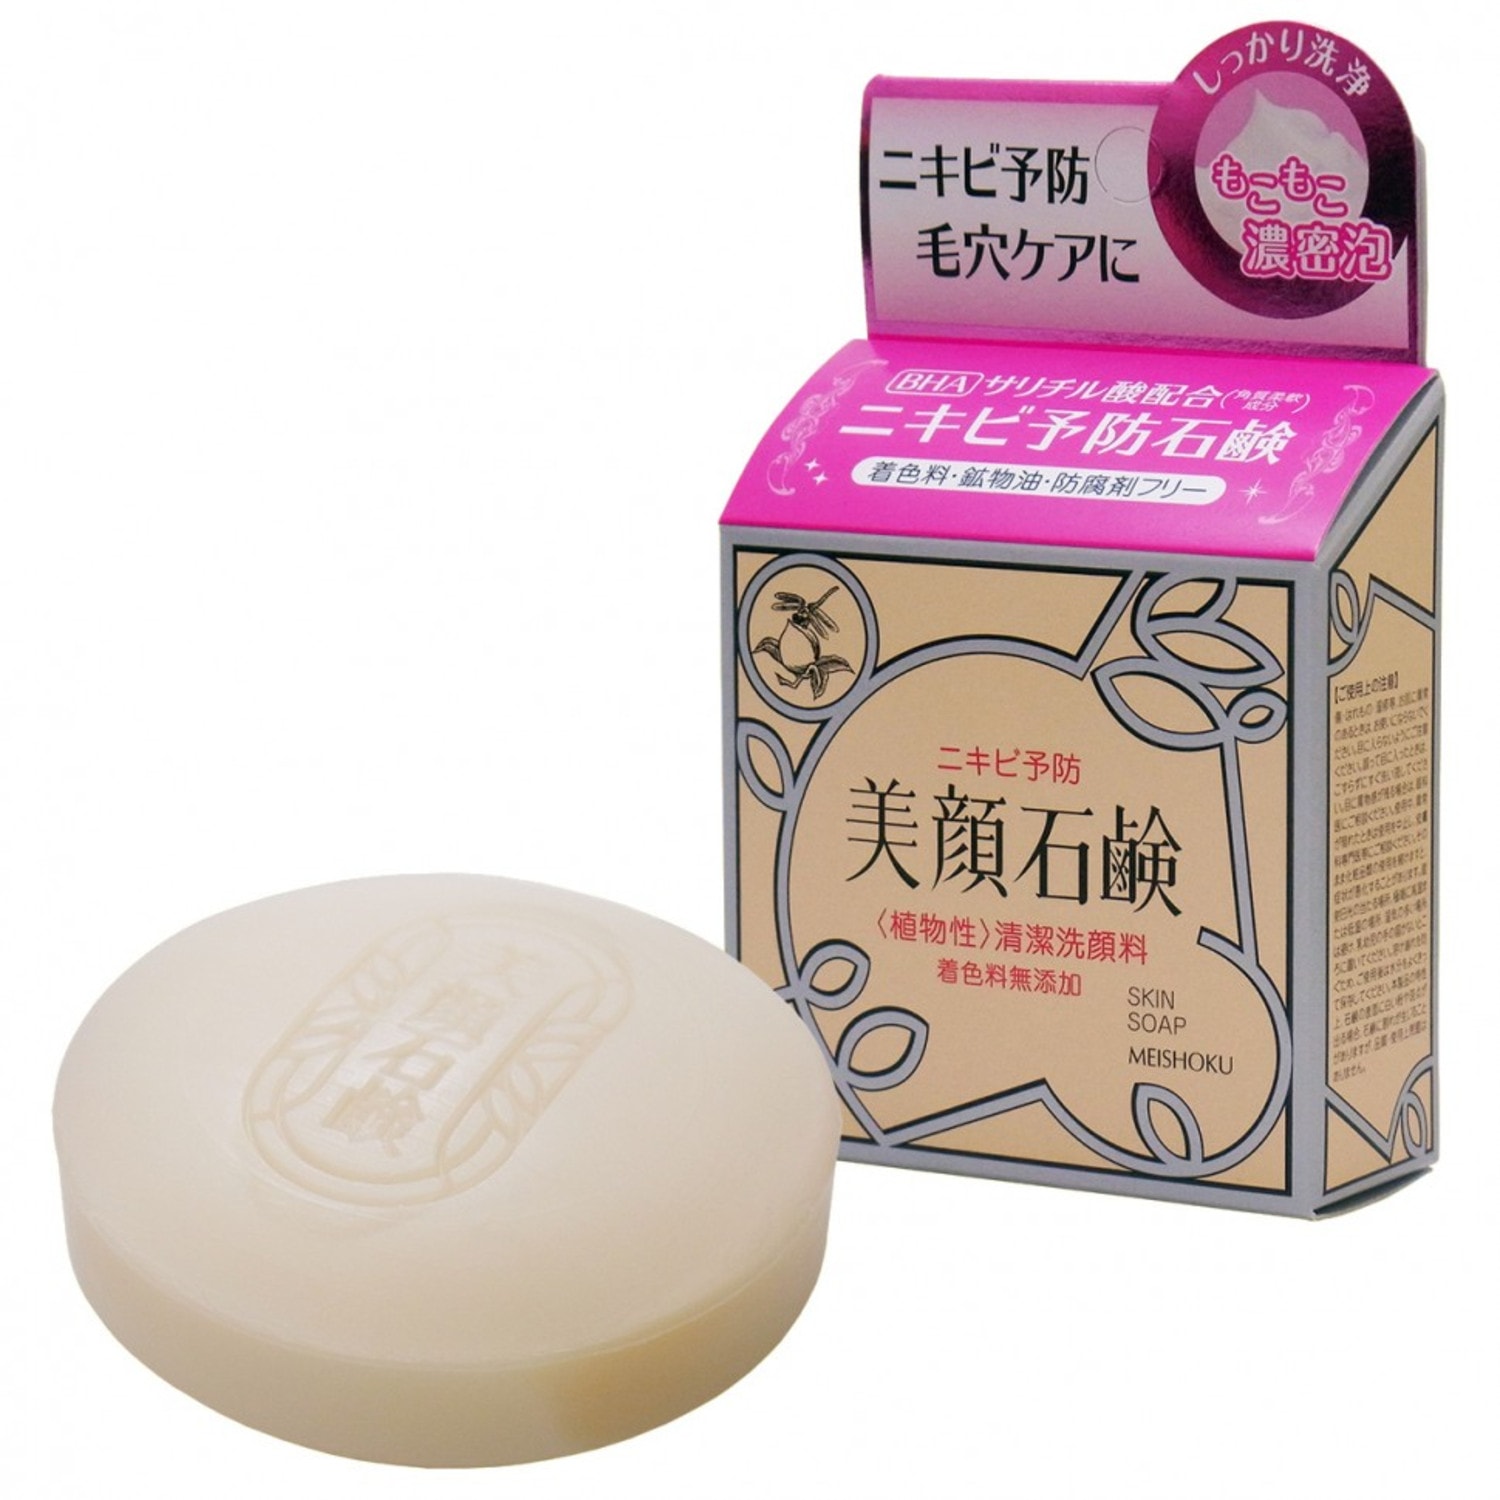 BIGANSUI SKIN SOAP Мыло туалетное для проблемной кожи лица, 80г. / 113703